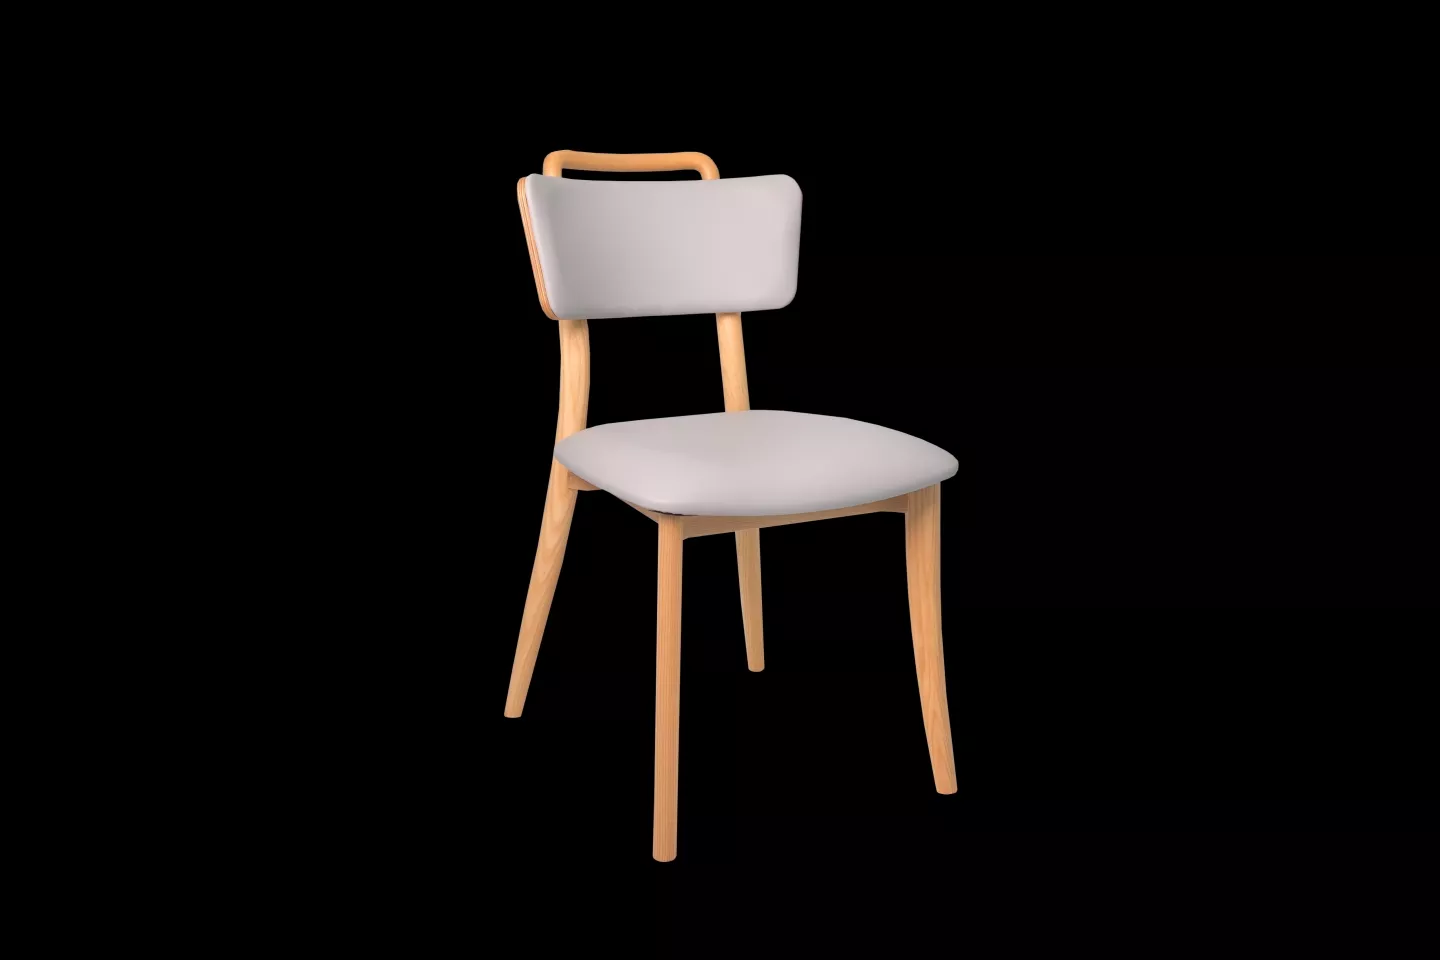 訂製實木餐椅側拍照片,淺紫灰色坐墊搭配北美梣木原木材